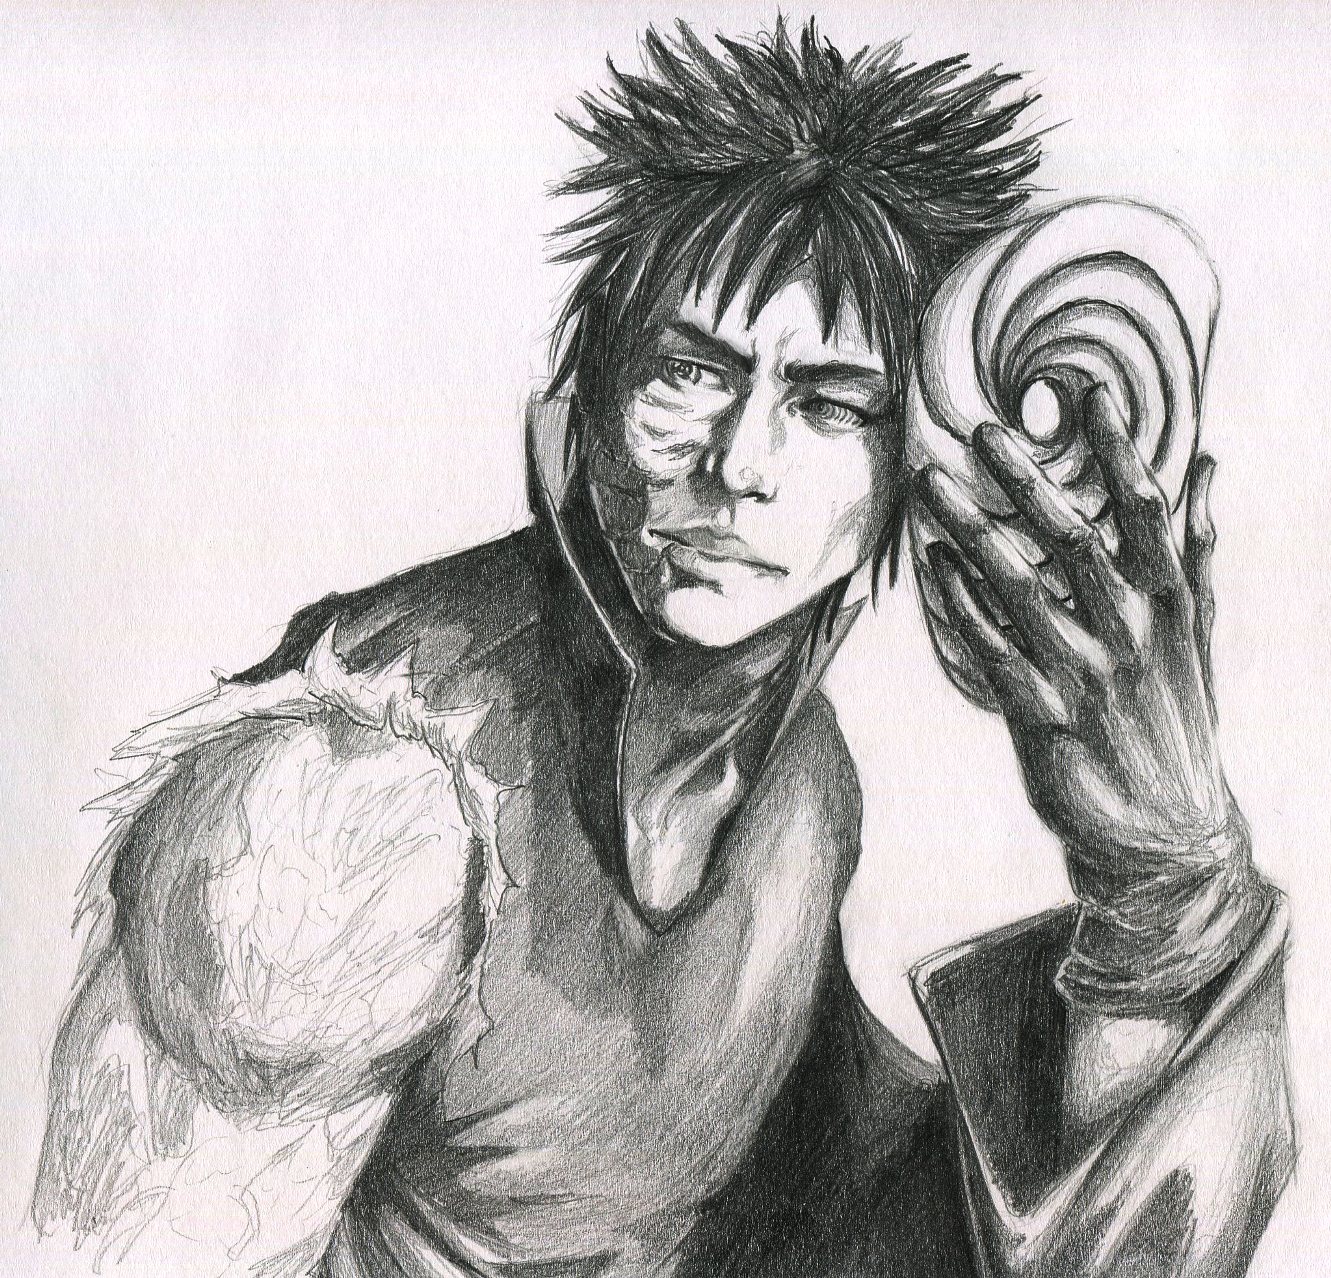 Obito Uchiha fan art I drew : r/Naruto